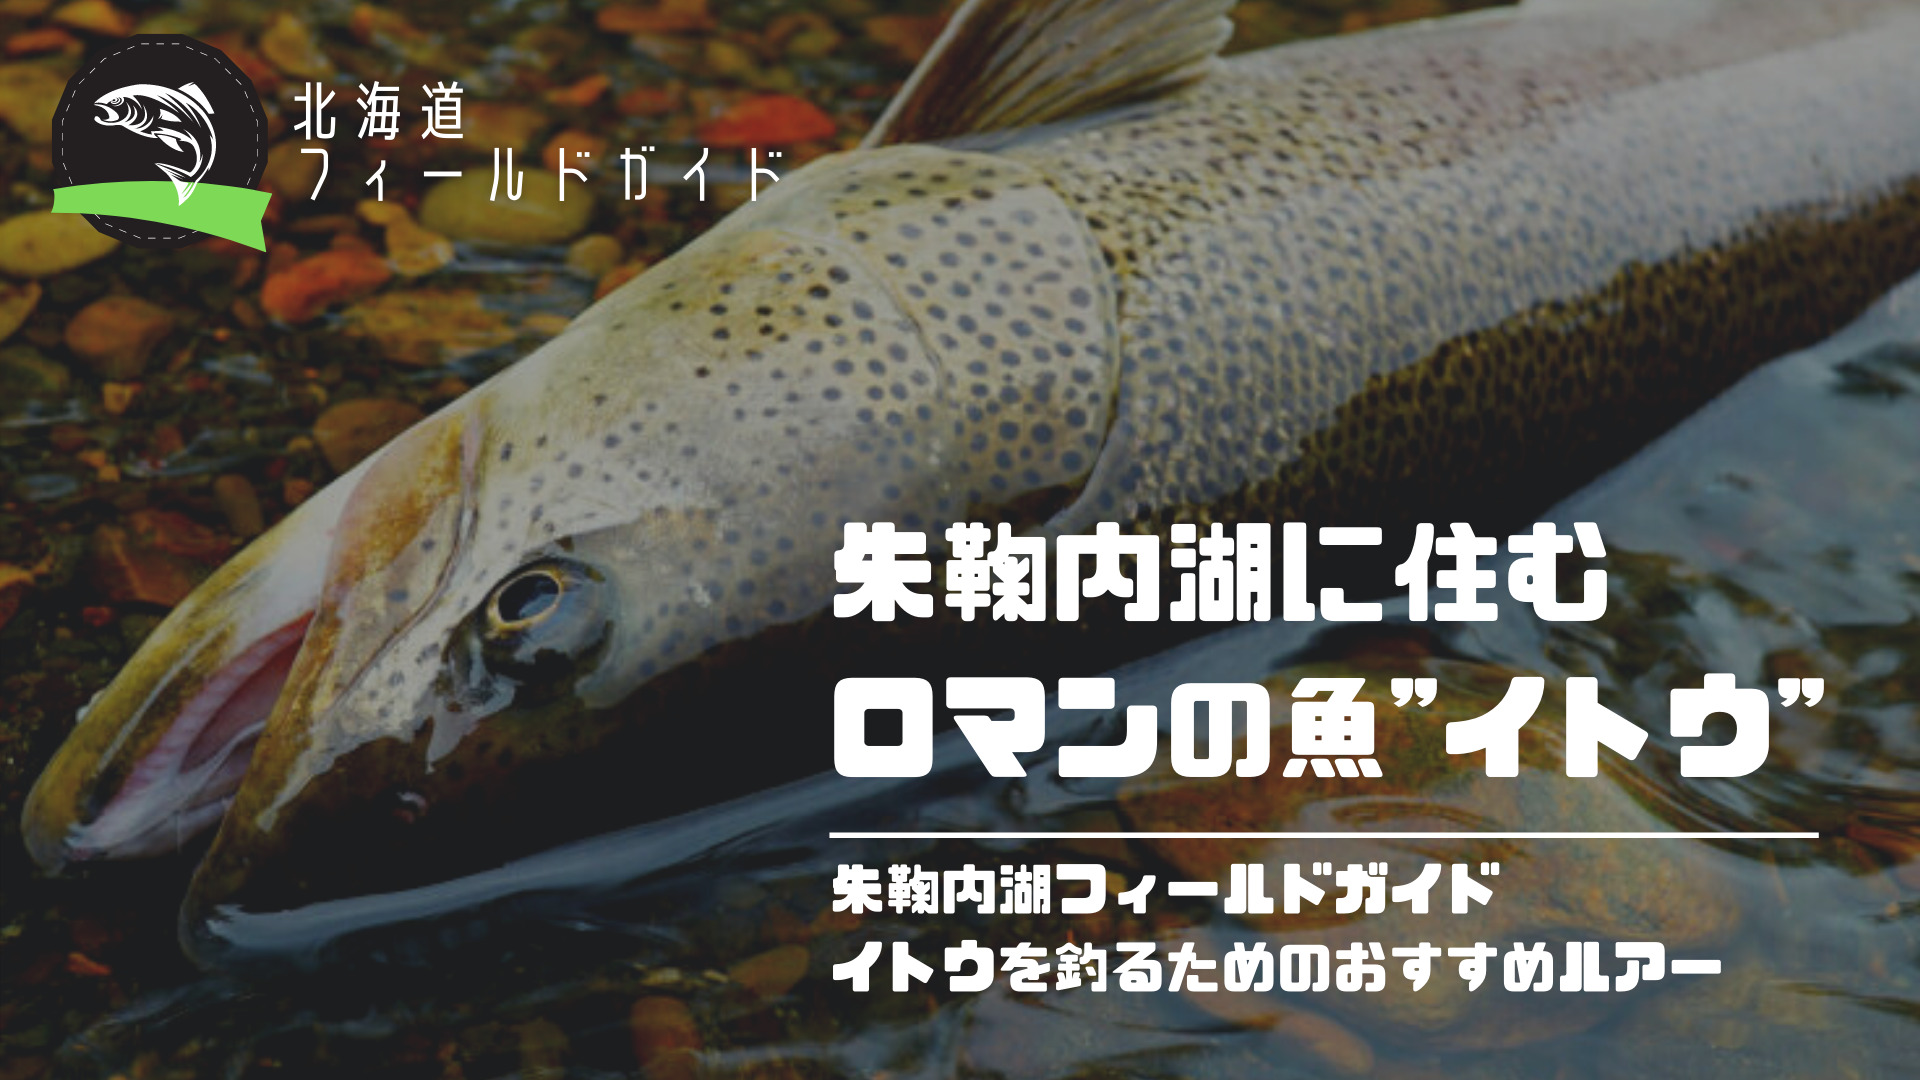 幻の魚「イトウ」が釣れる北海道の朱鞠内湖！地元民がおすすめルアー3選と釣れるトラウトの種類を解説